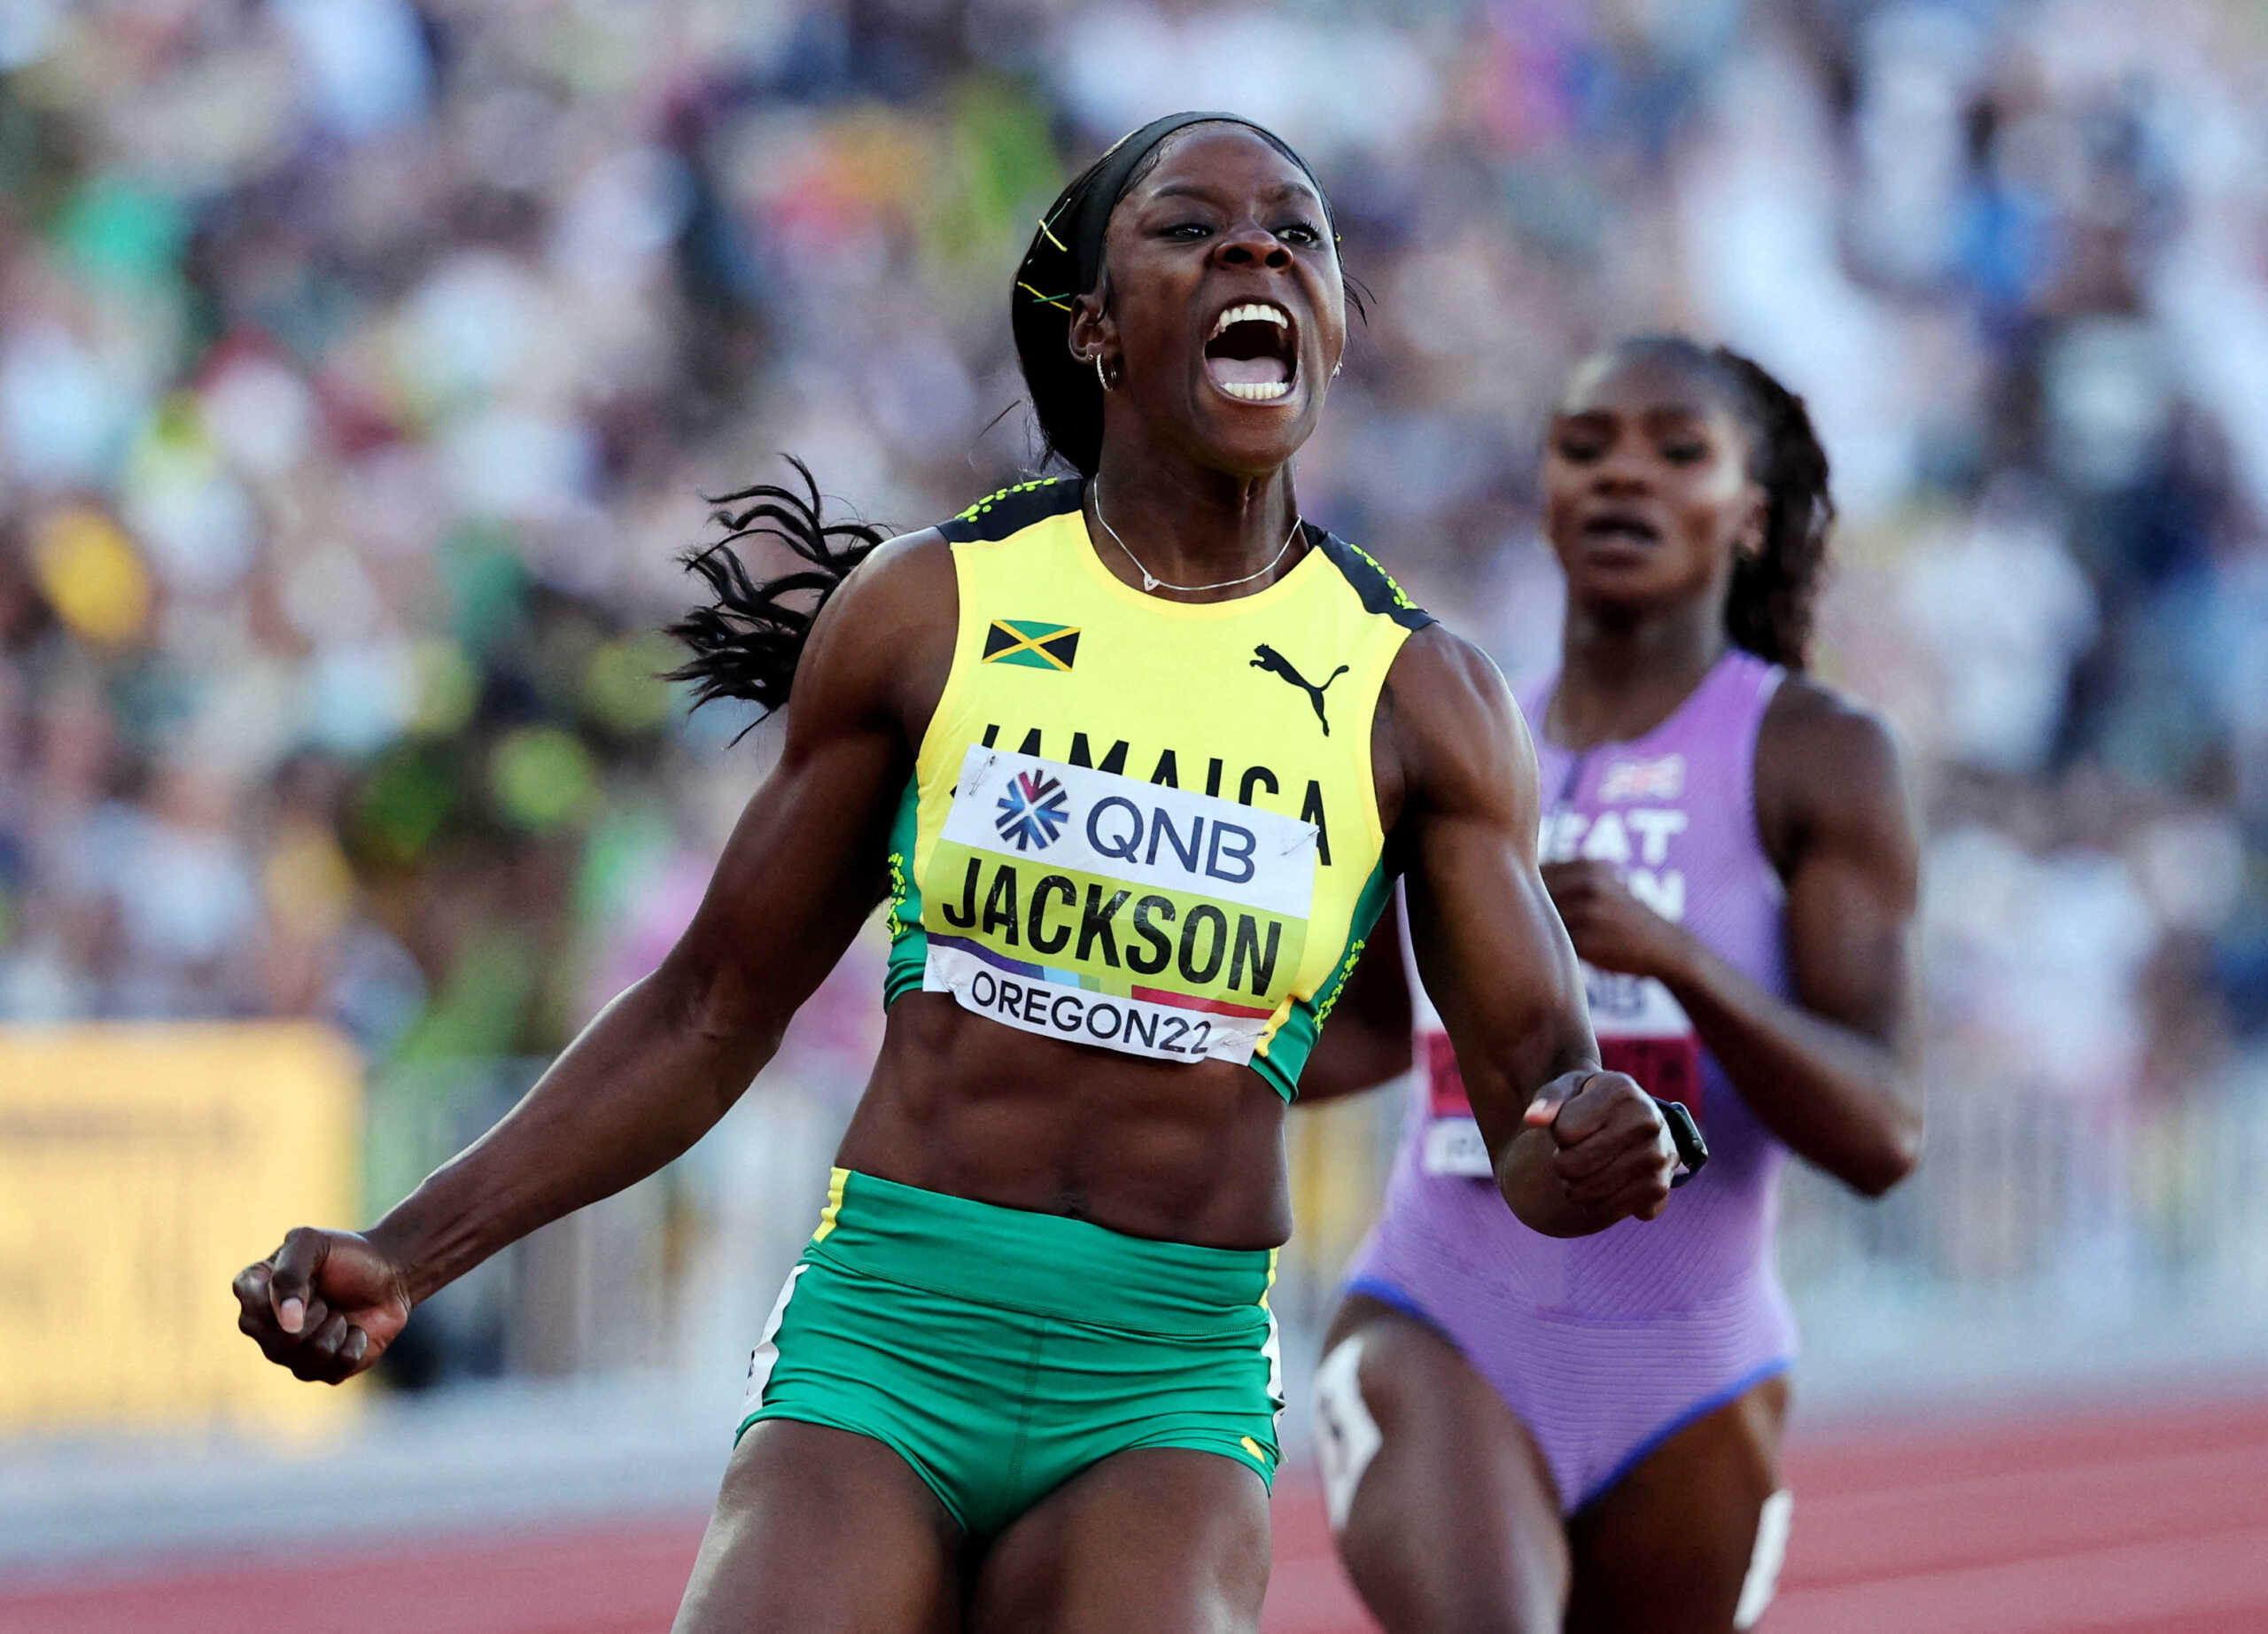 Παγκόσμιο Πρωτάθλημα στίβου: Απίθανη κούρσα και χρυσό μετάλλιο για την Σέρικα Τζάκσον στα 200 μέτρα